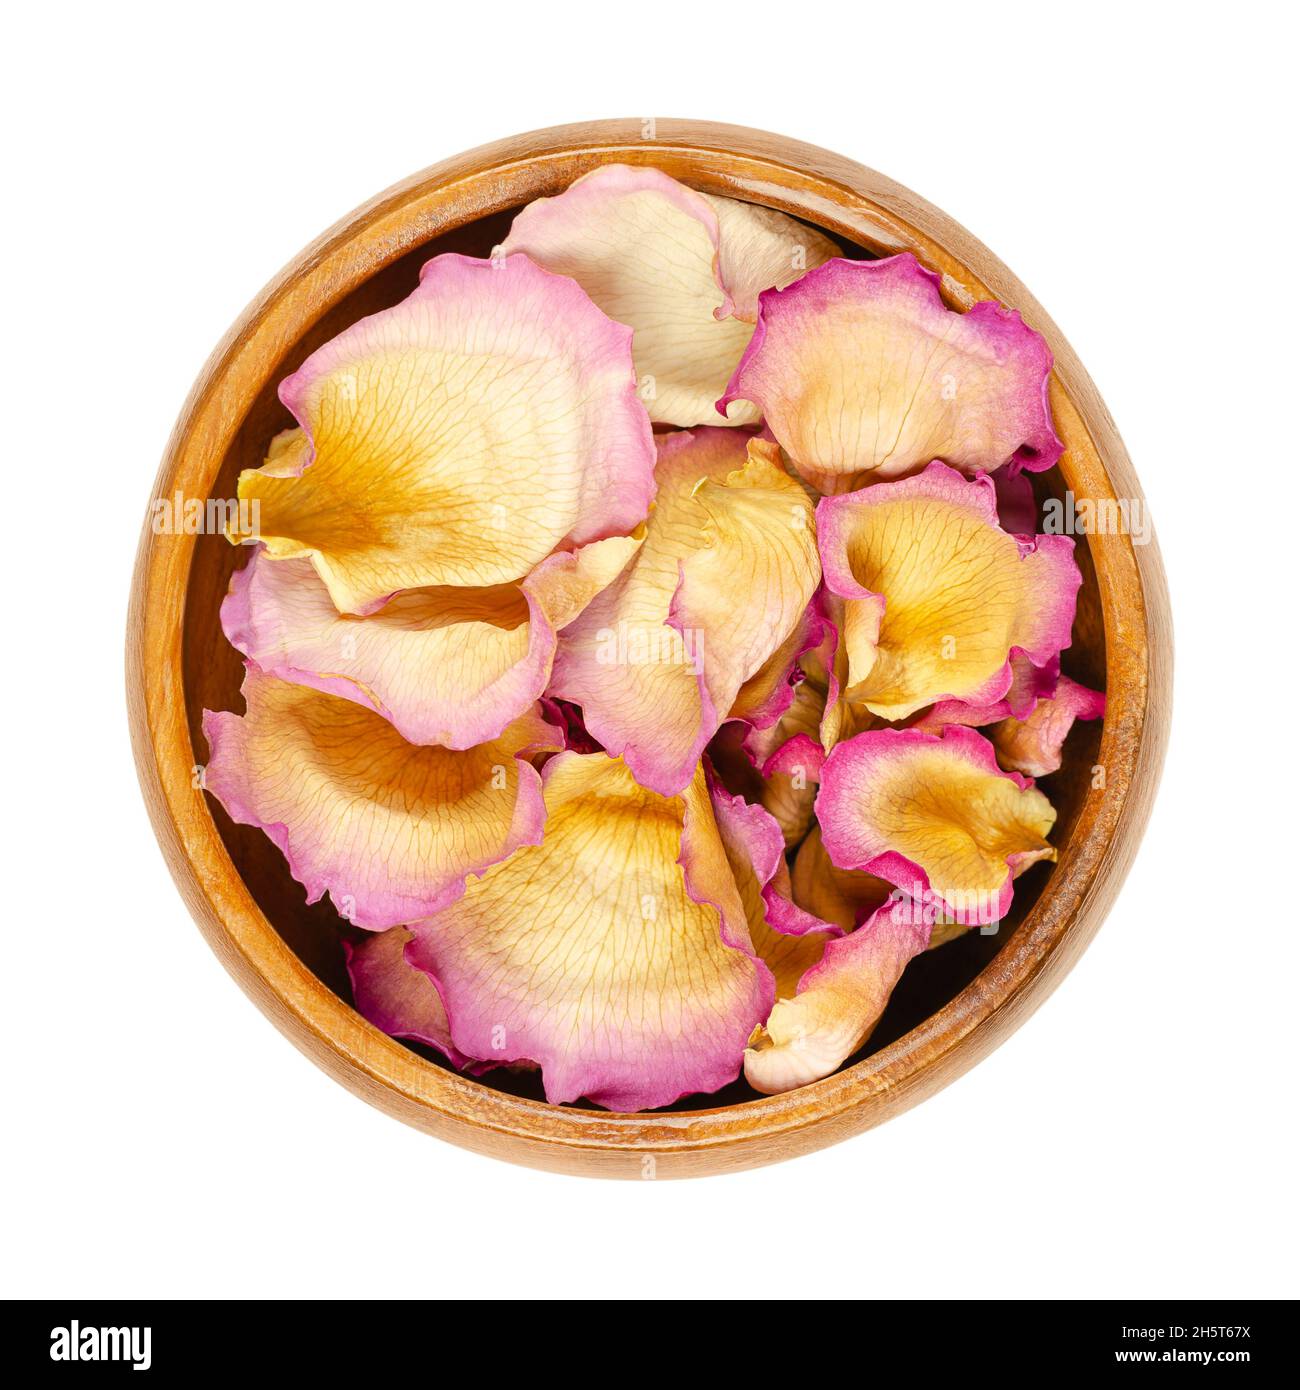 Pétales de rose entiers séchés dans un bol en bois.Pétales d'une rose pâle de couleur jardin, appelée rose chinoise, rose chinoise ou rose Bengale.Rosa chinensis. Banque D'Images